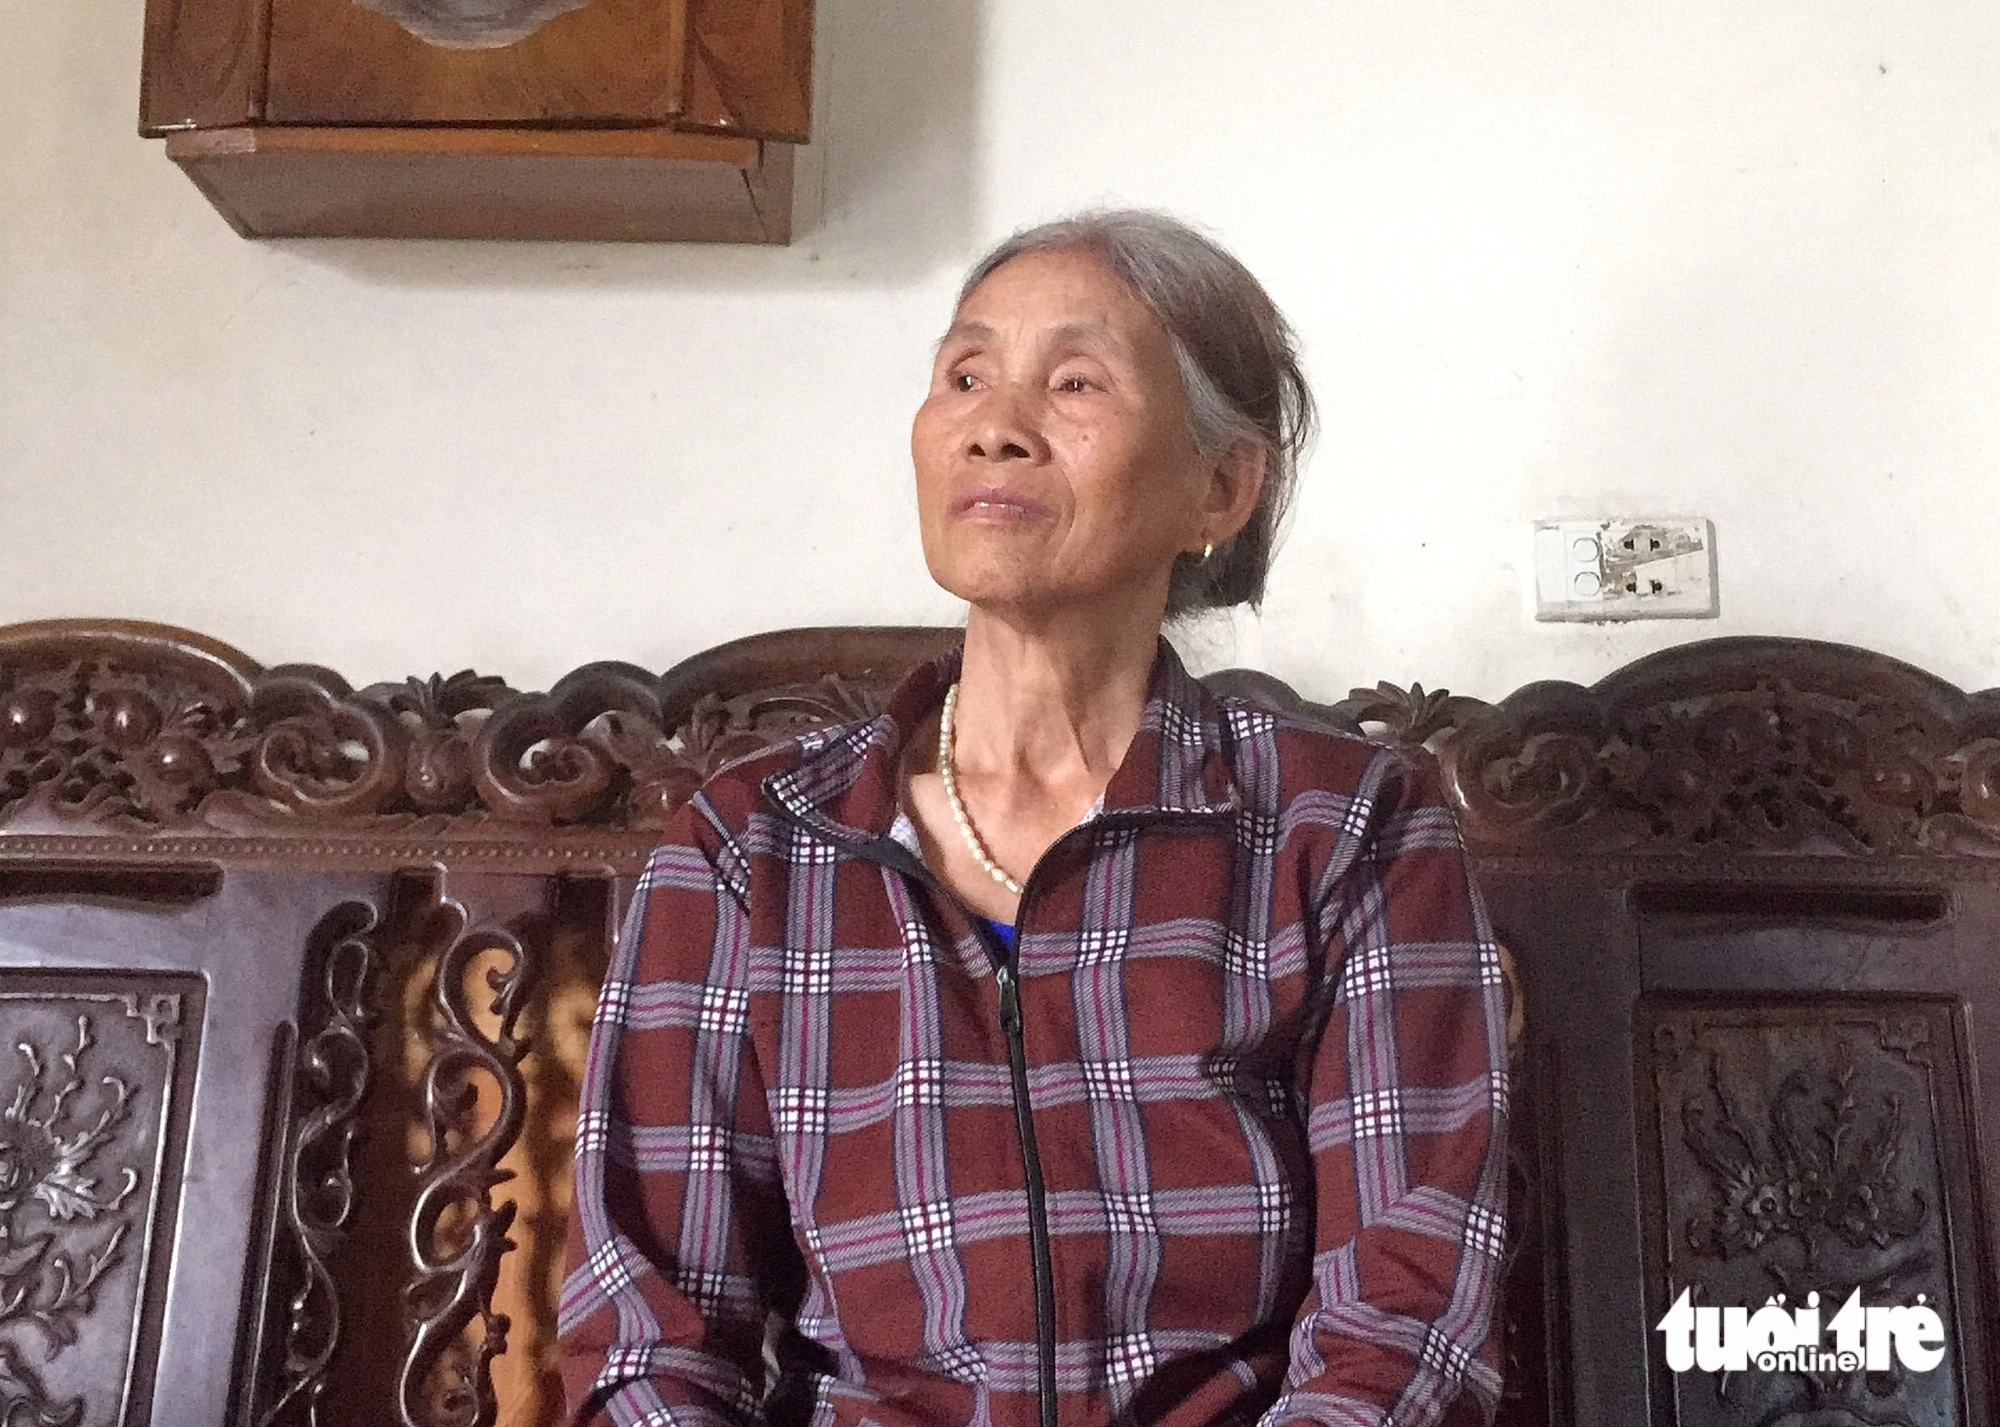 Bà Nguyễn Thị Lăng đã đưa cho "cô đồng" Hương 65 triệu đồng để làm lễ với lời phán con trai bị ung thư giai đoạn cuối sẽ sống được thêm 3 năm, "không làm chết ngay" - Ảnh: DANH KHANG